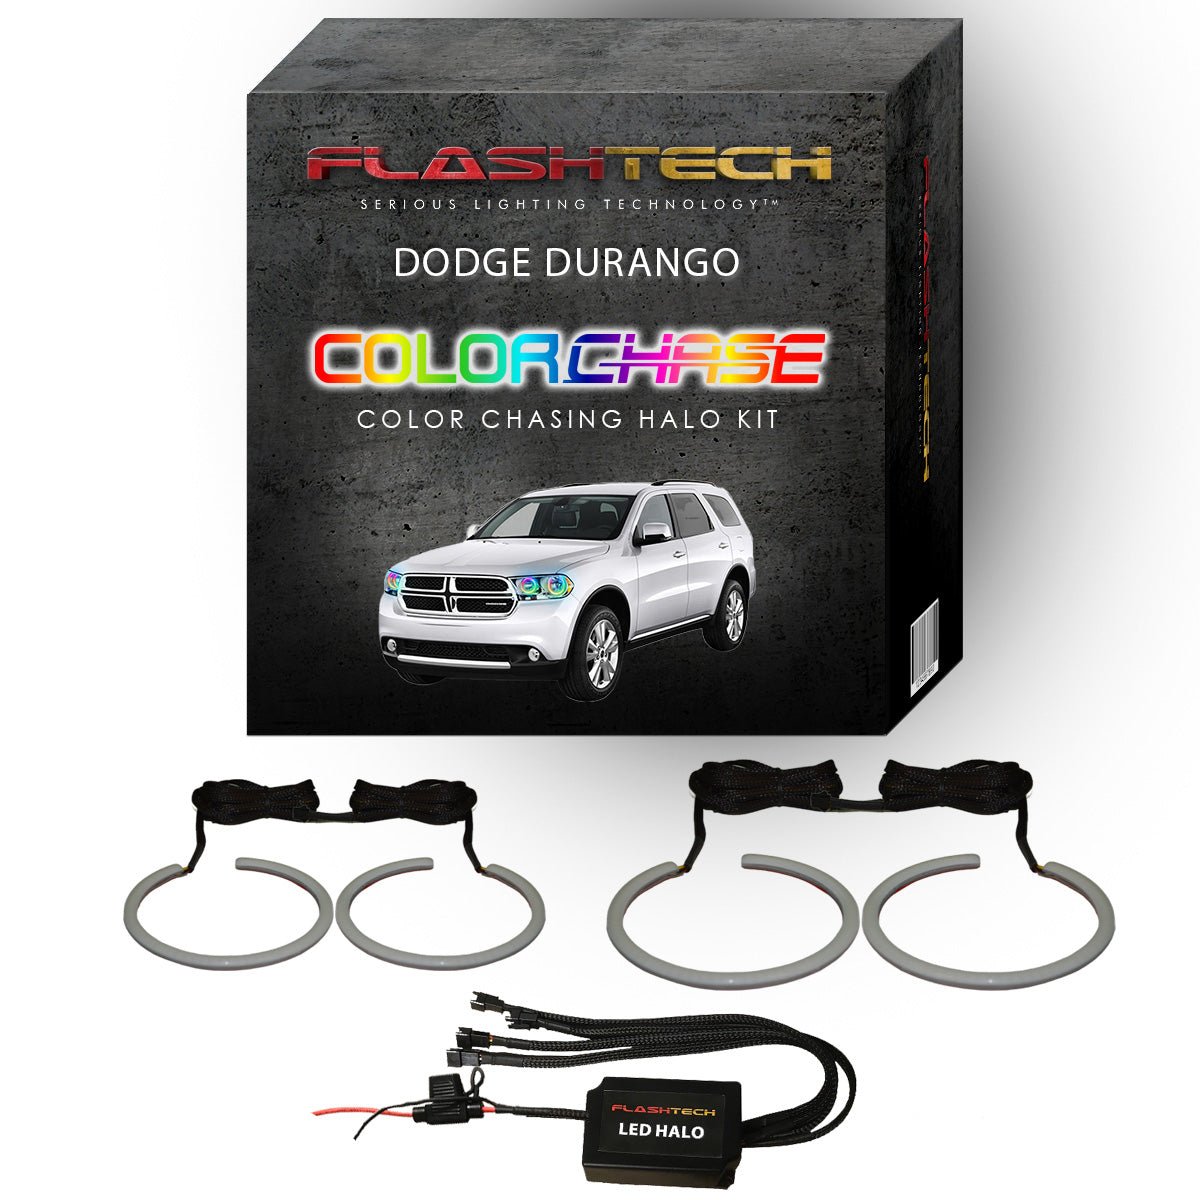 Dodge Durango ColorChase LED Halo Headlight Kit 2011-2013